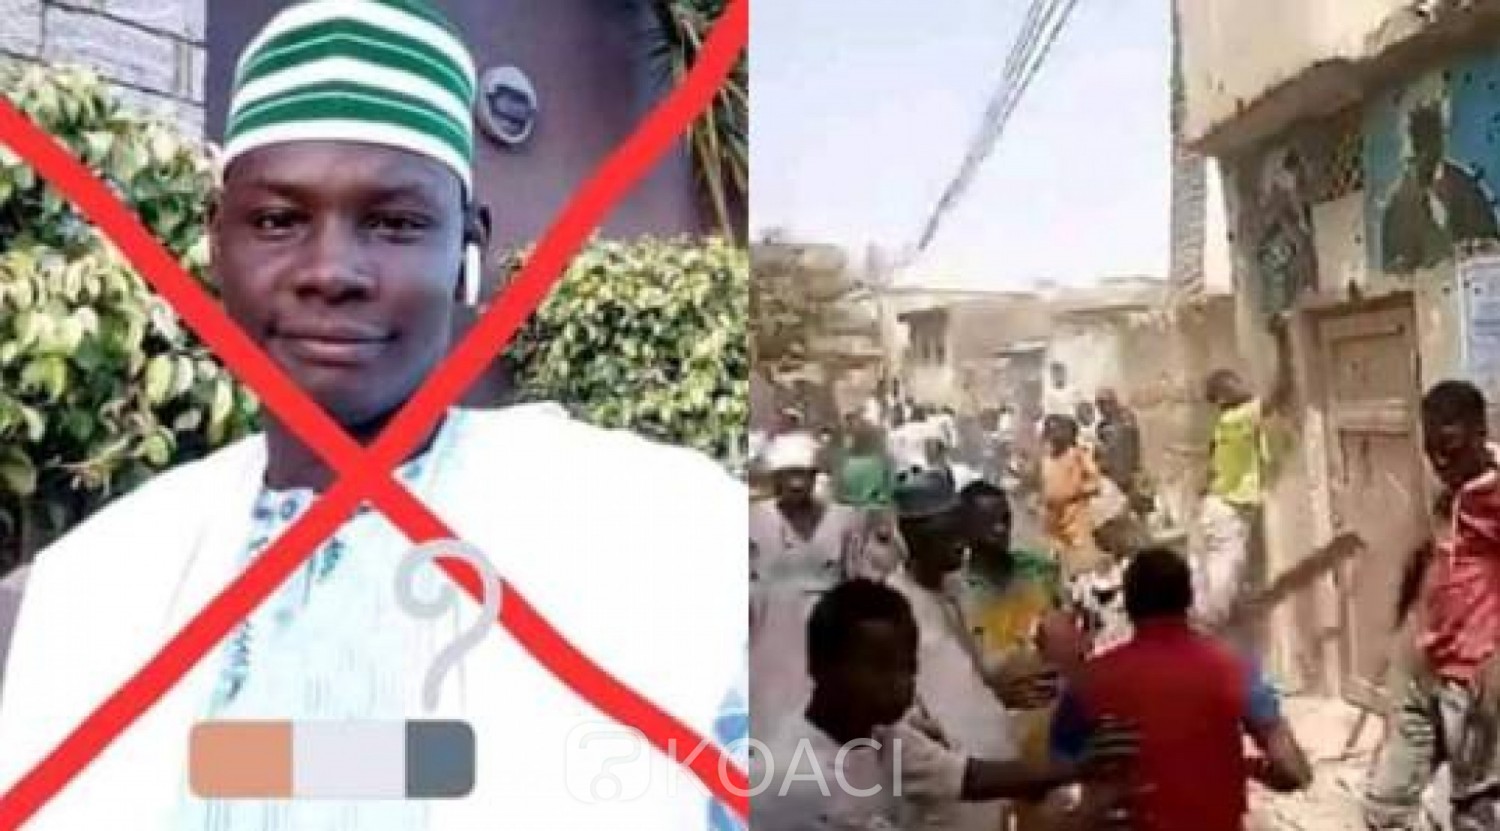 Nigeria : Procès en appel de deux nigérians condamnés pour «blasphème» contre Mahomet